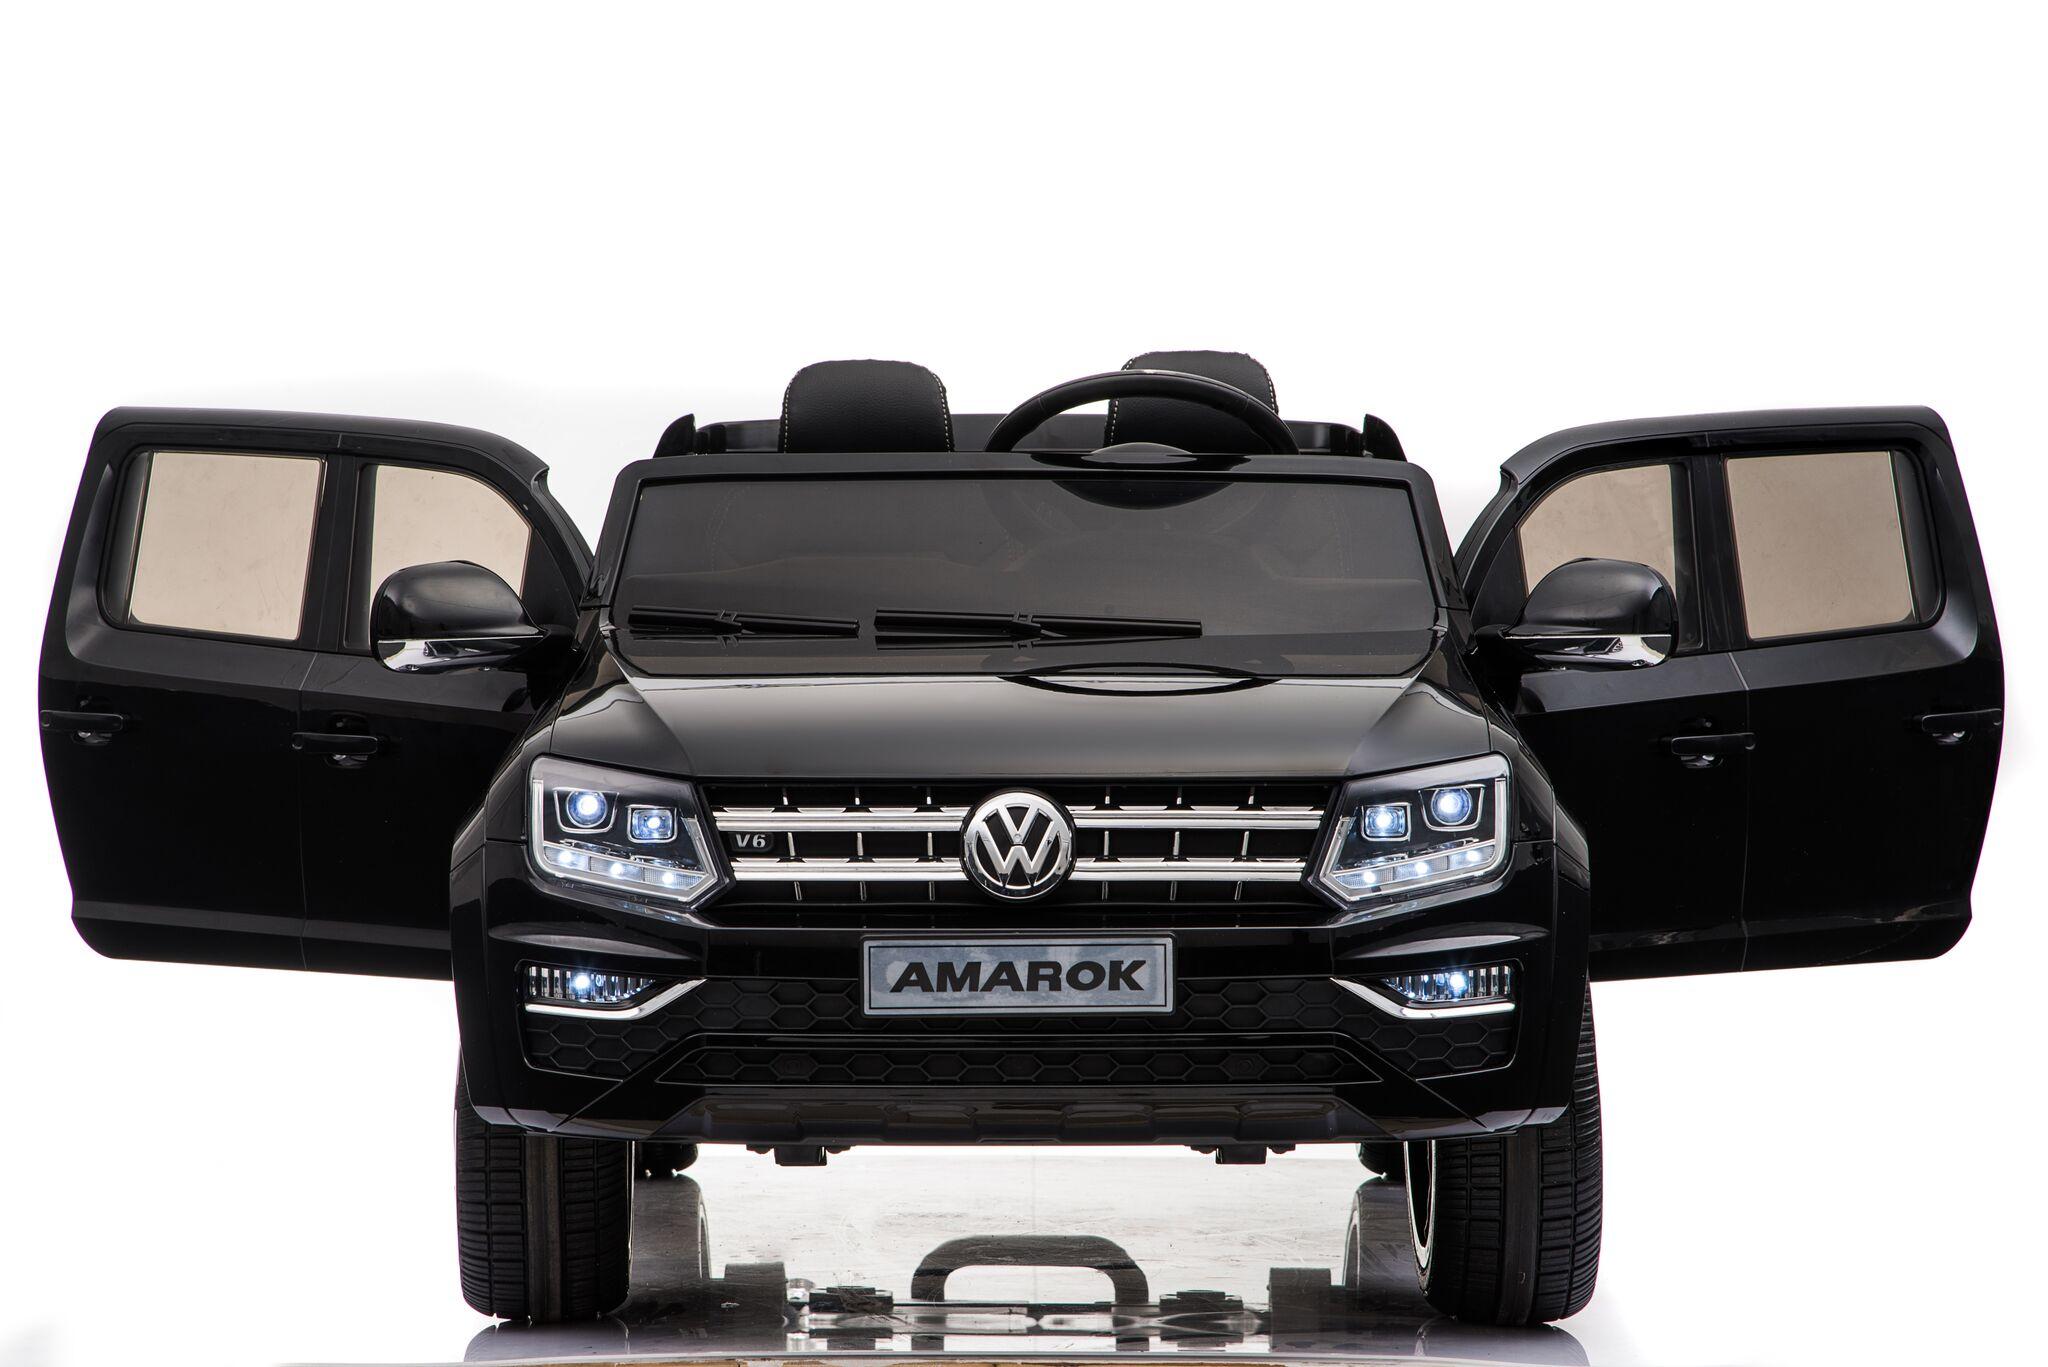 Электромобиль Volkswagen Amarok, черного цвета  